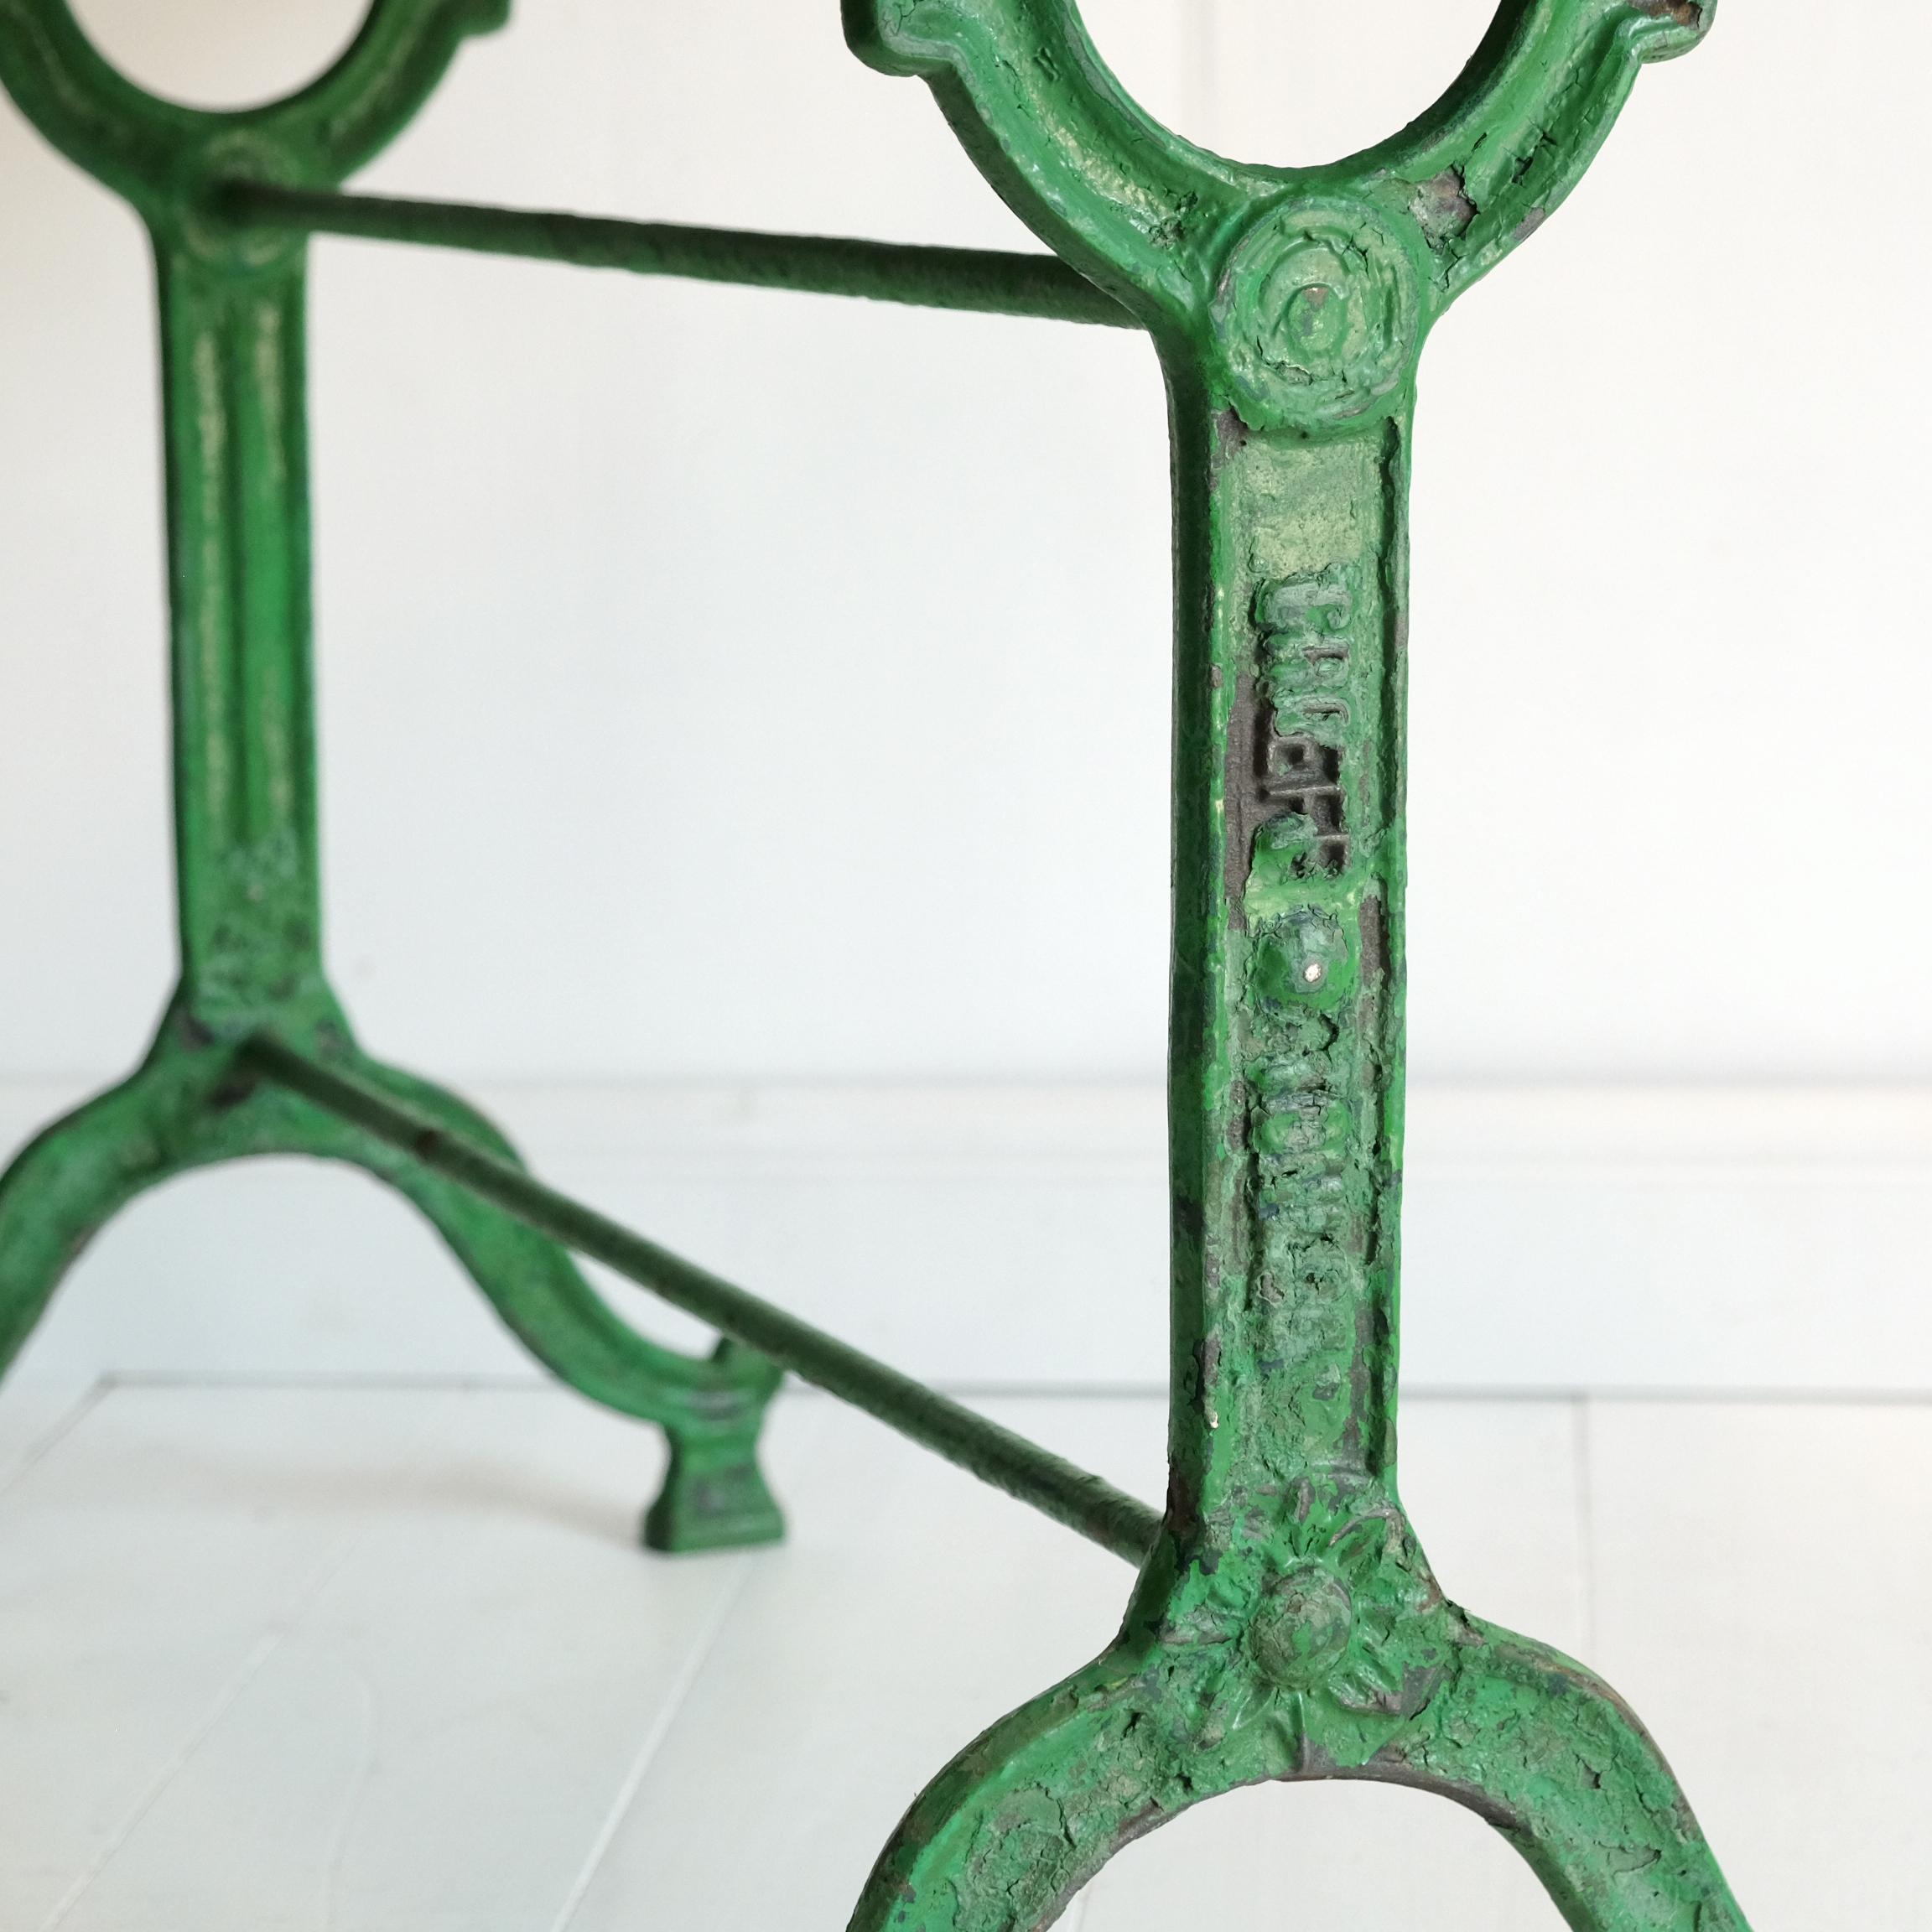 green cast iron garden table